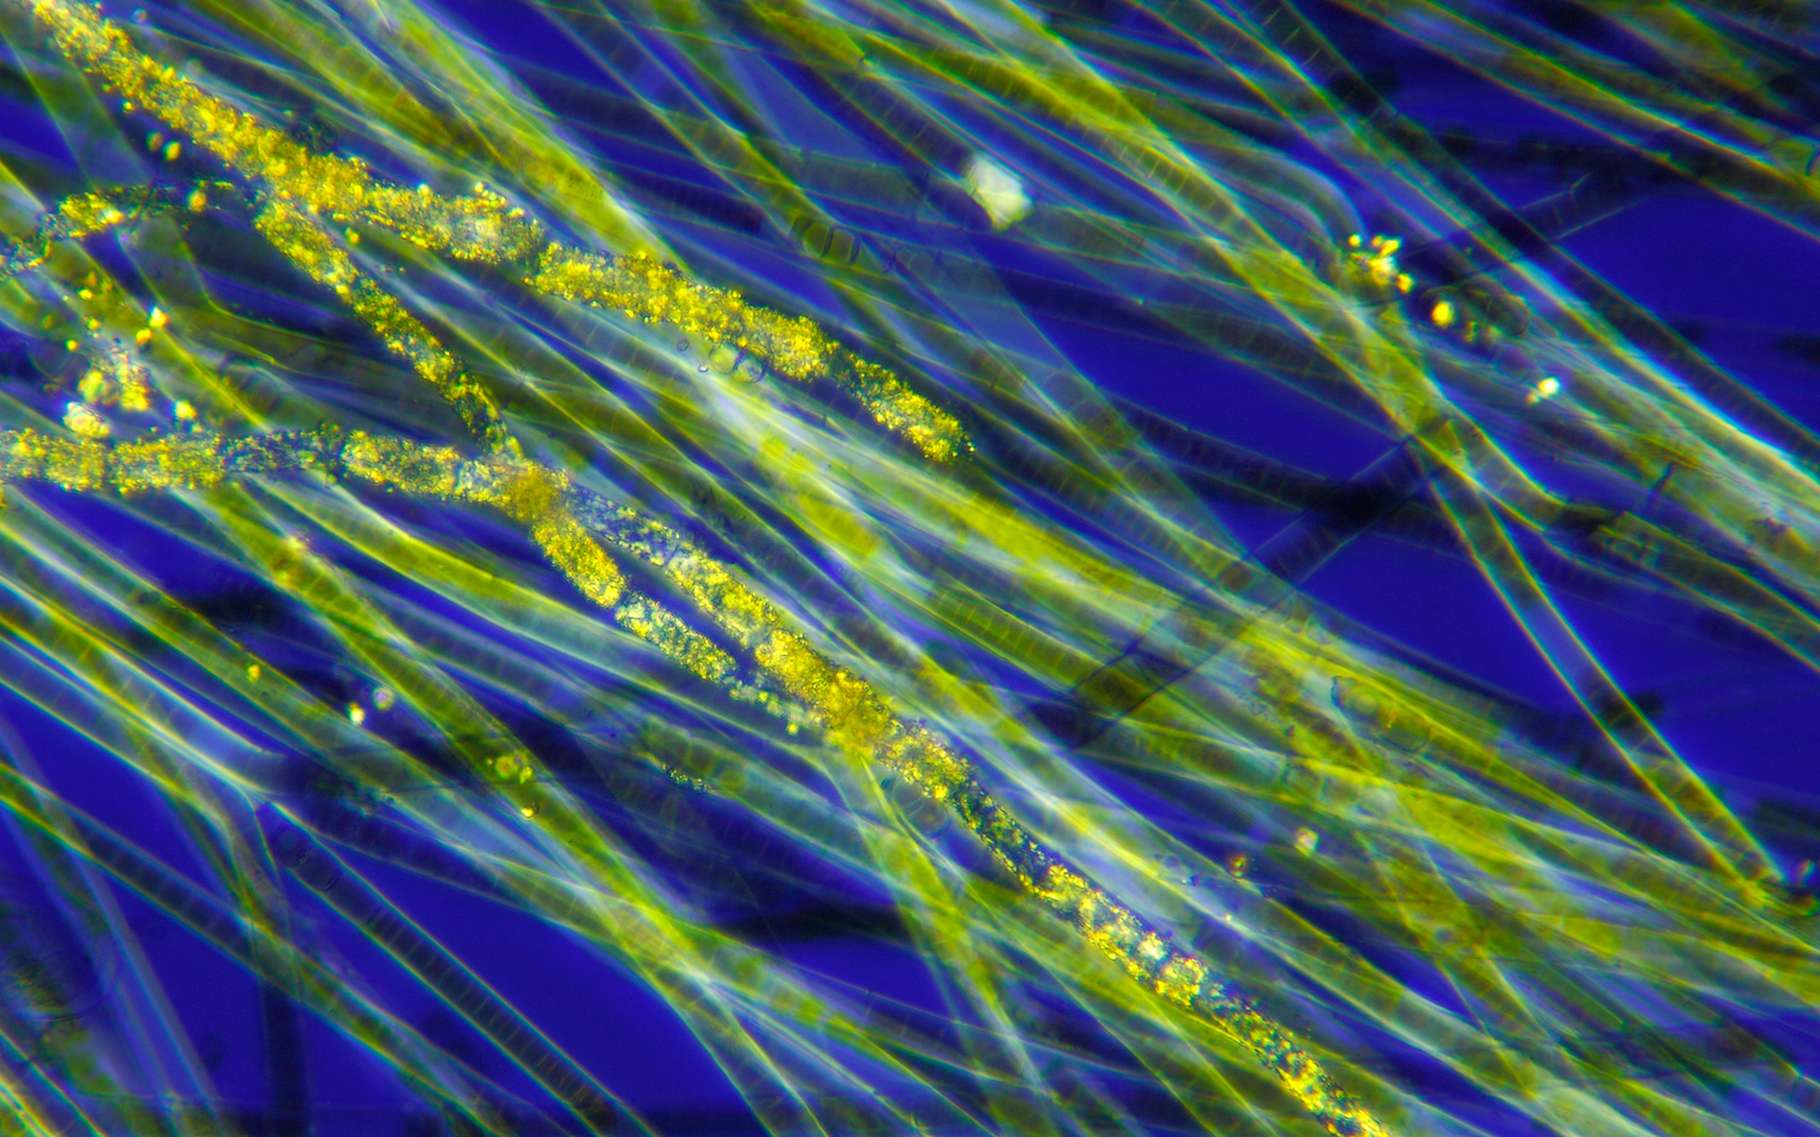 Des chercheurs de l’université de Cambridge (Royaume-Uni) comptent sur des « algues bleues » pour alimenter l’Internet des objets. Ici, des cyanobactéries du genre Oscillatoria pour illustration. © Pawel Burgiel, Adobe Stock